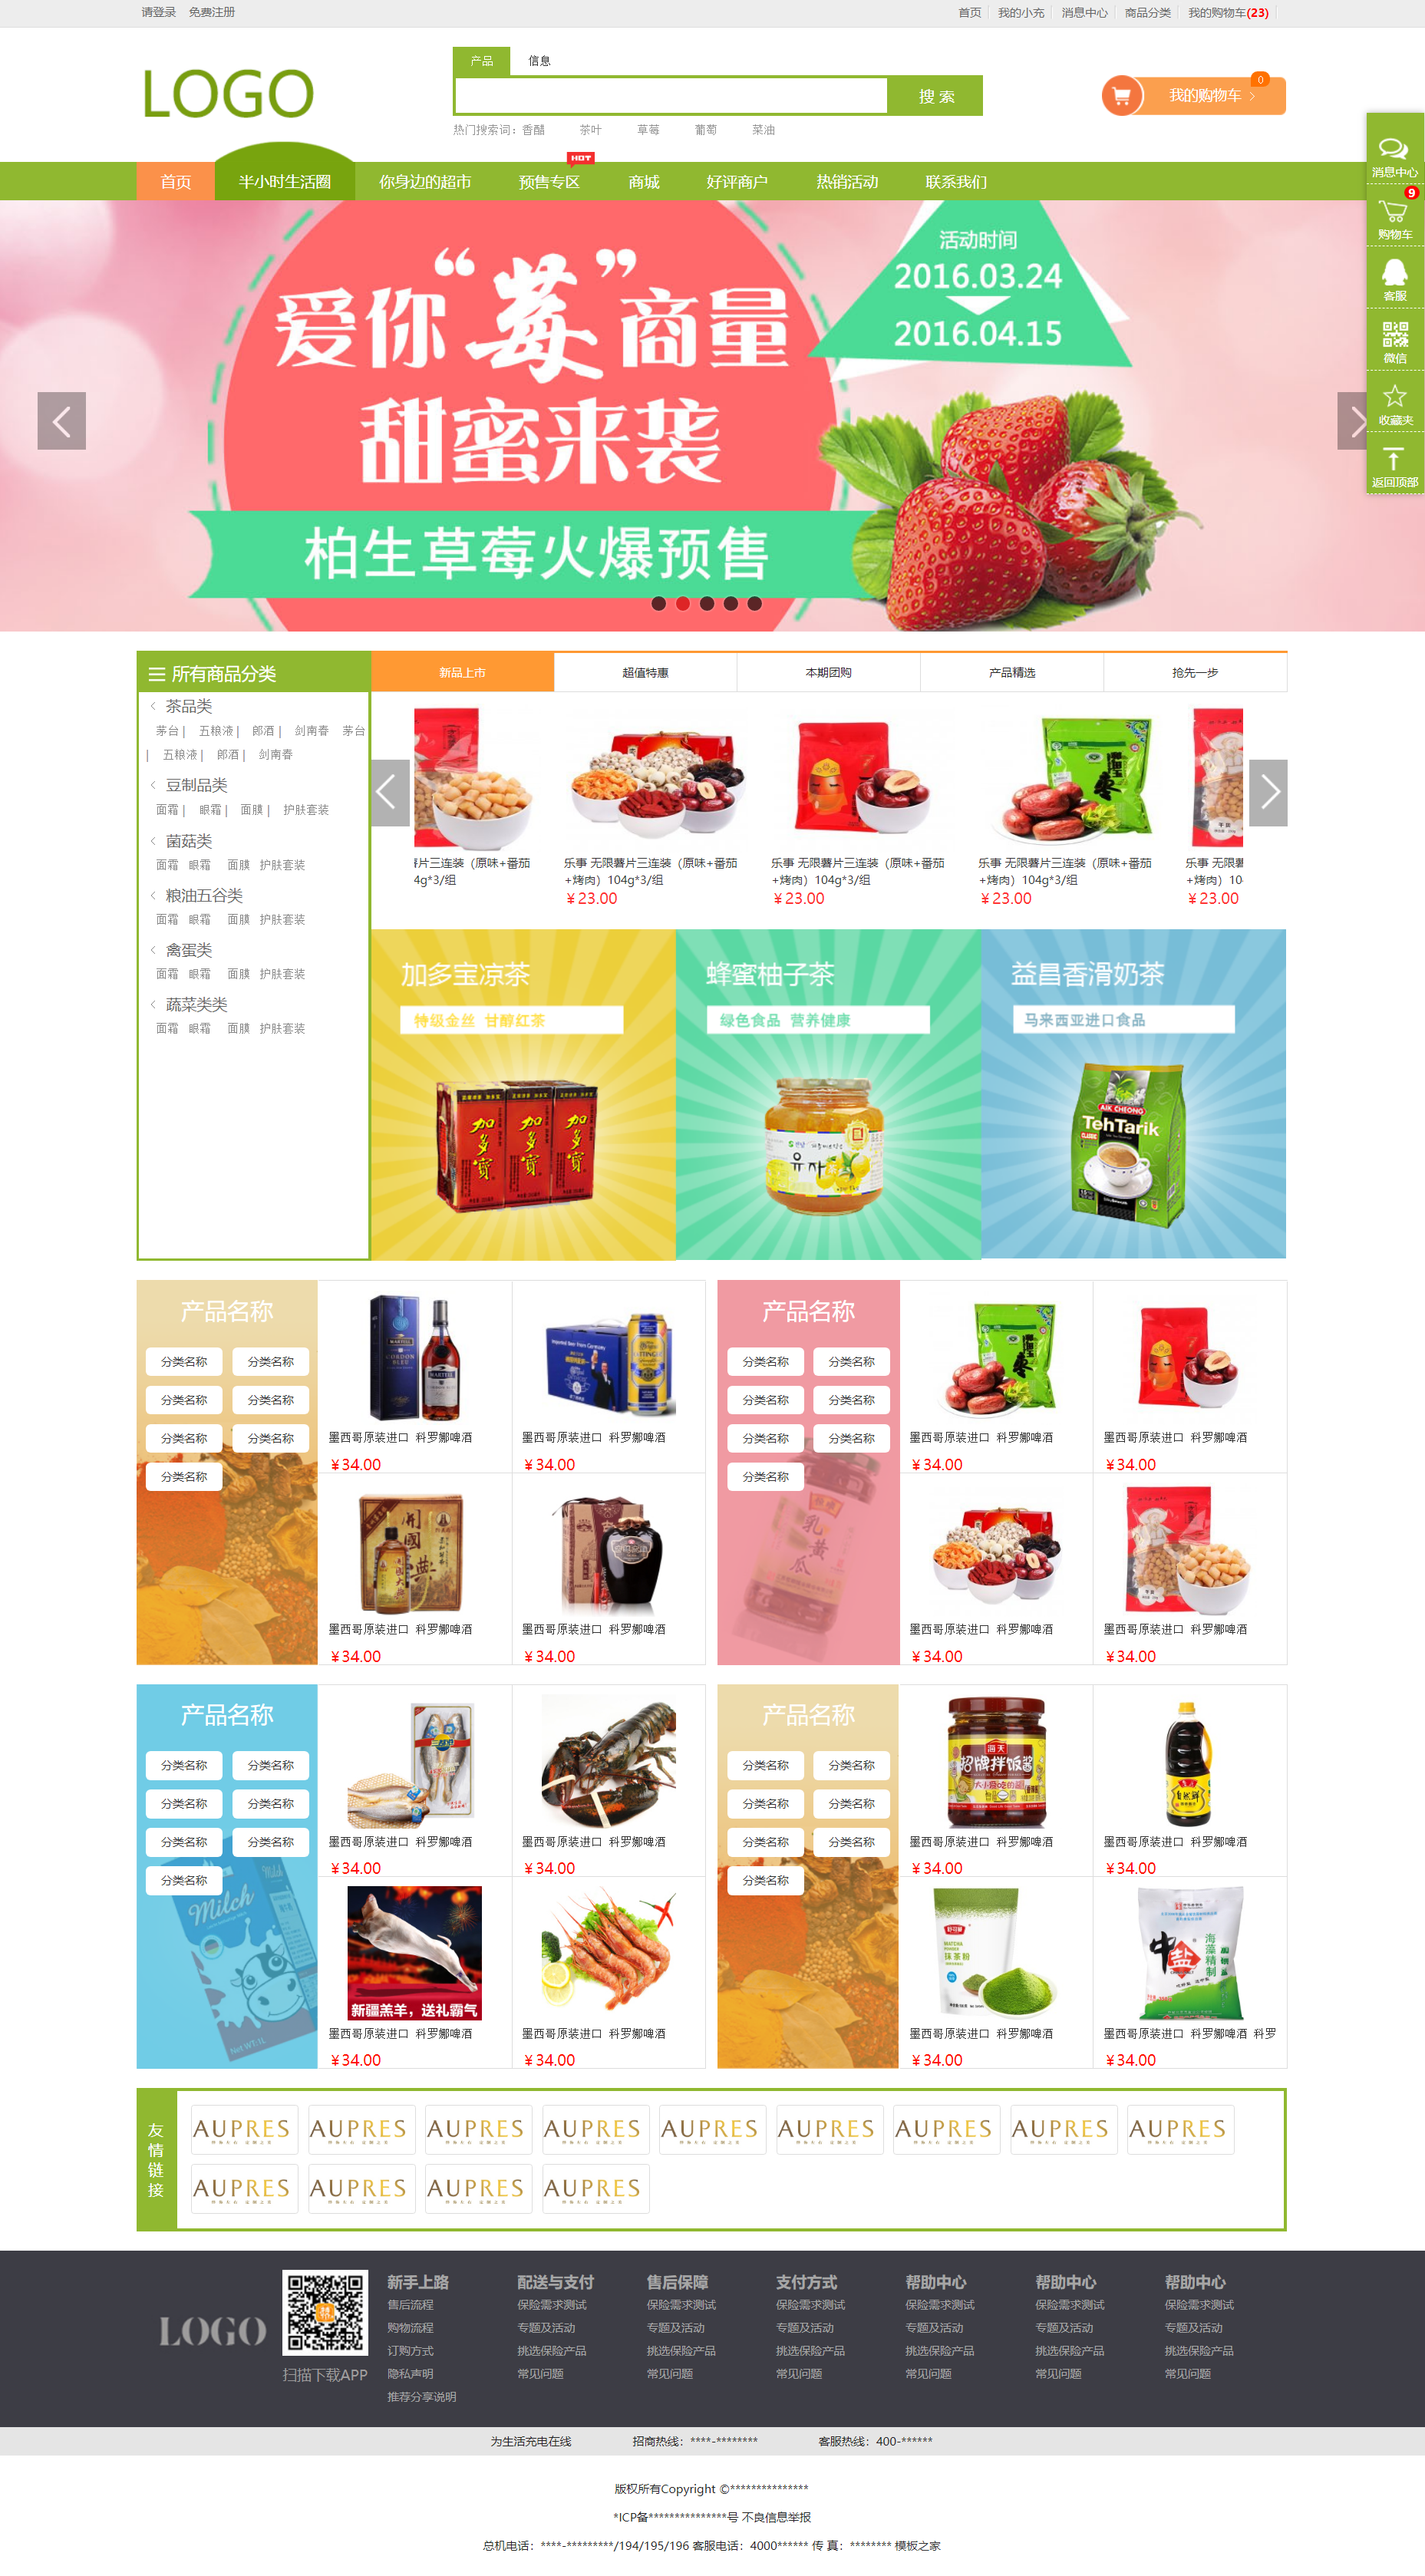 绿色简洁风格响应式网上购物企业网站模板